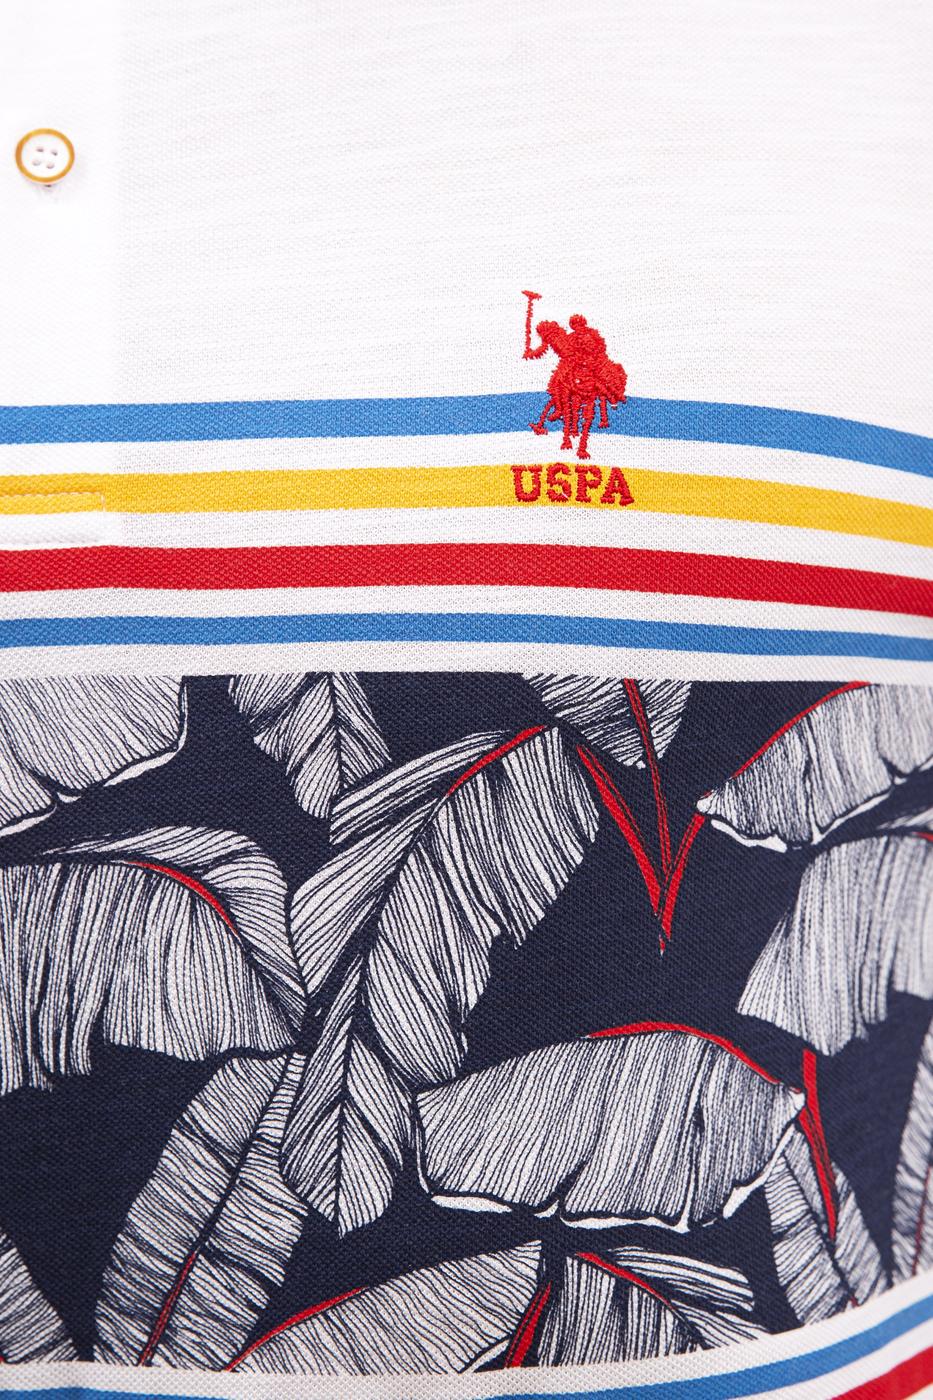 US Polo Assn. Colorful Stripe Small Logo Polo Shirt - Men